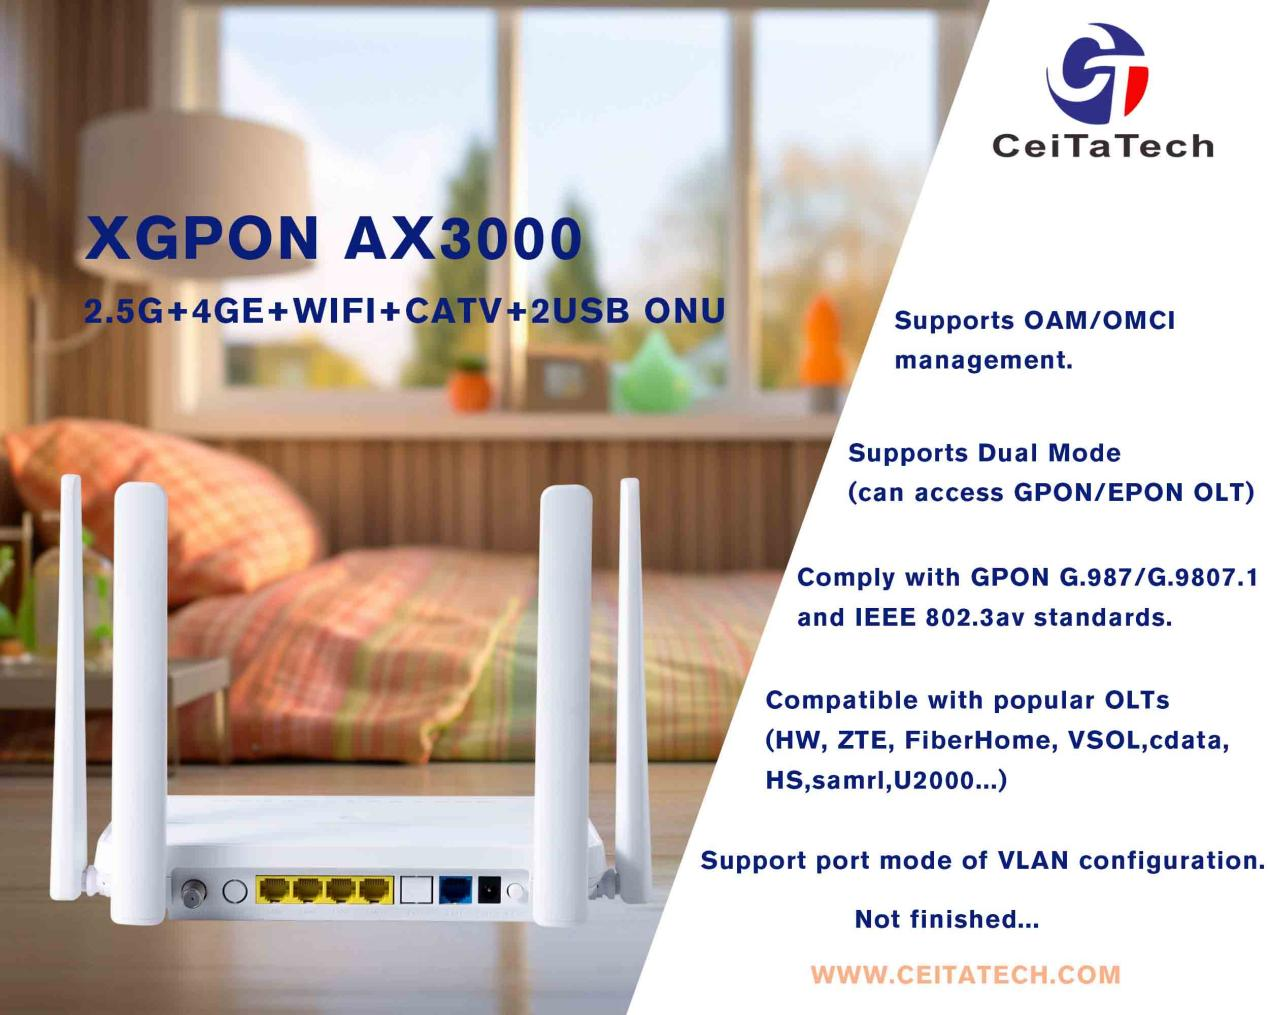 Porta di rete XGPON 2.5G più 4 porte di rete Gigabit (4GE) più WIFI da 3000 Mbps più CATV più 2 USB ONU ONT